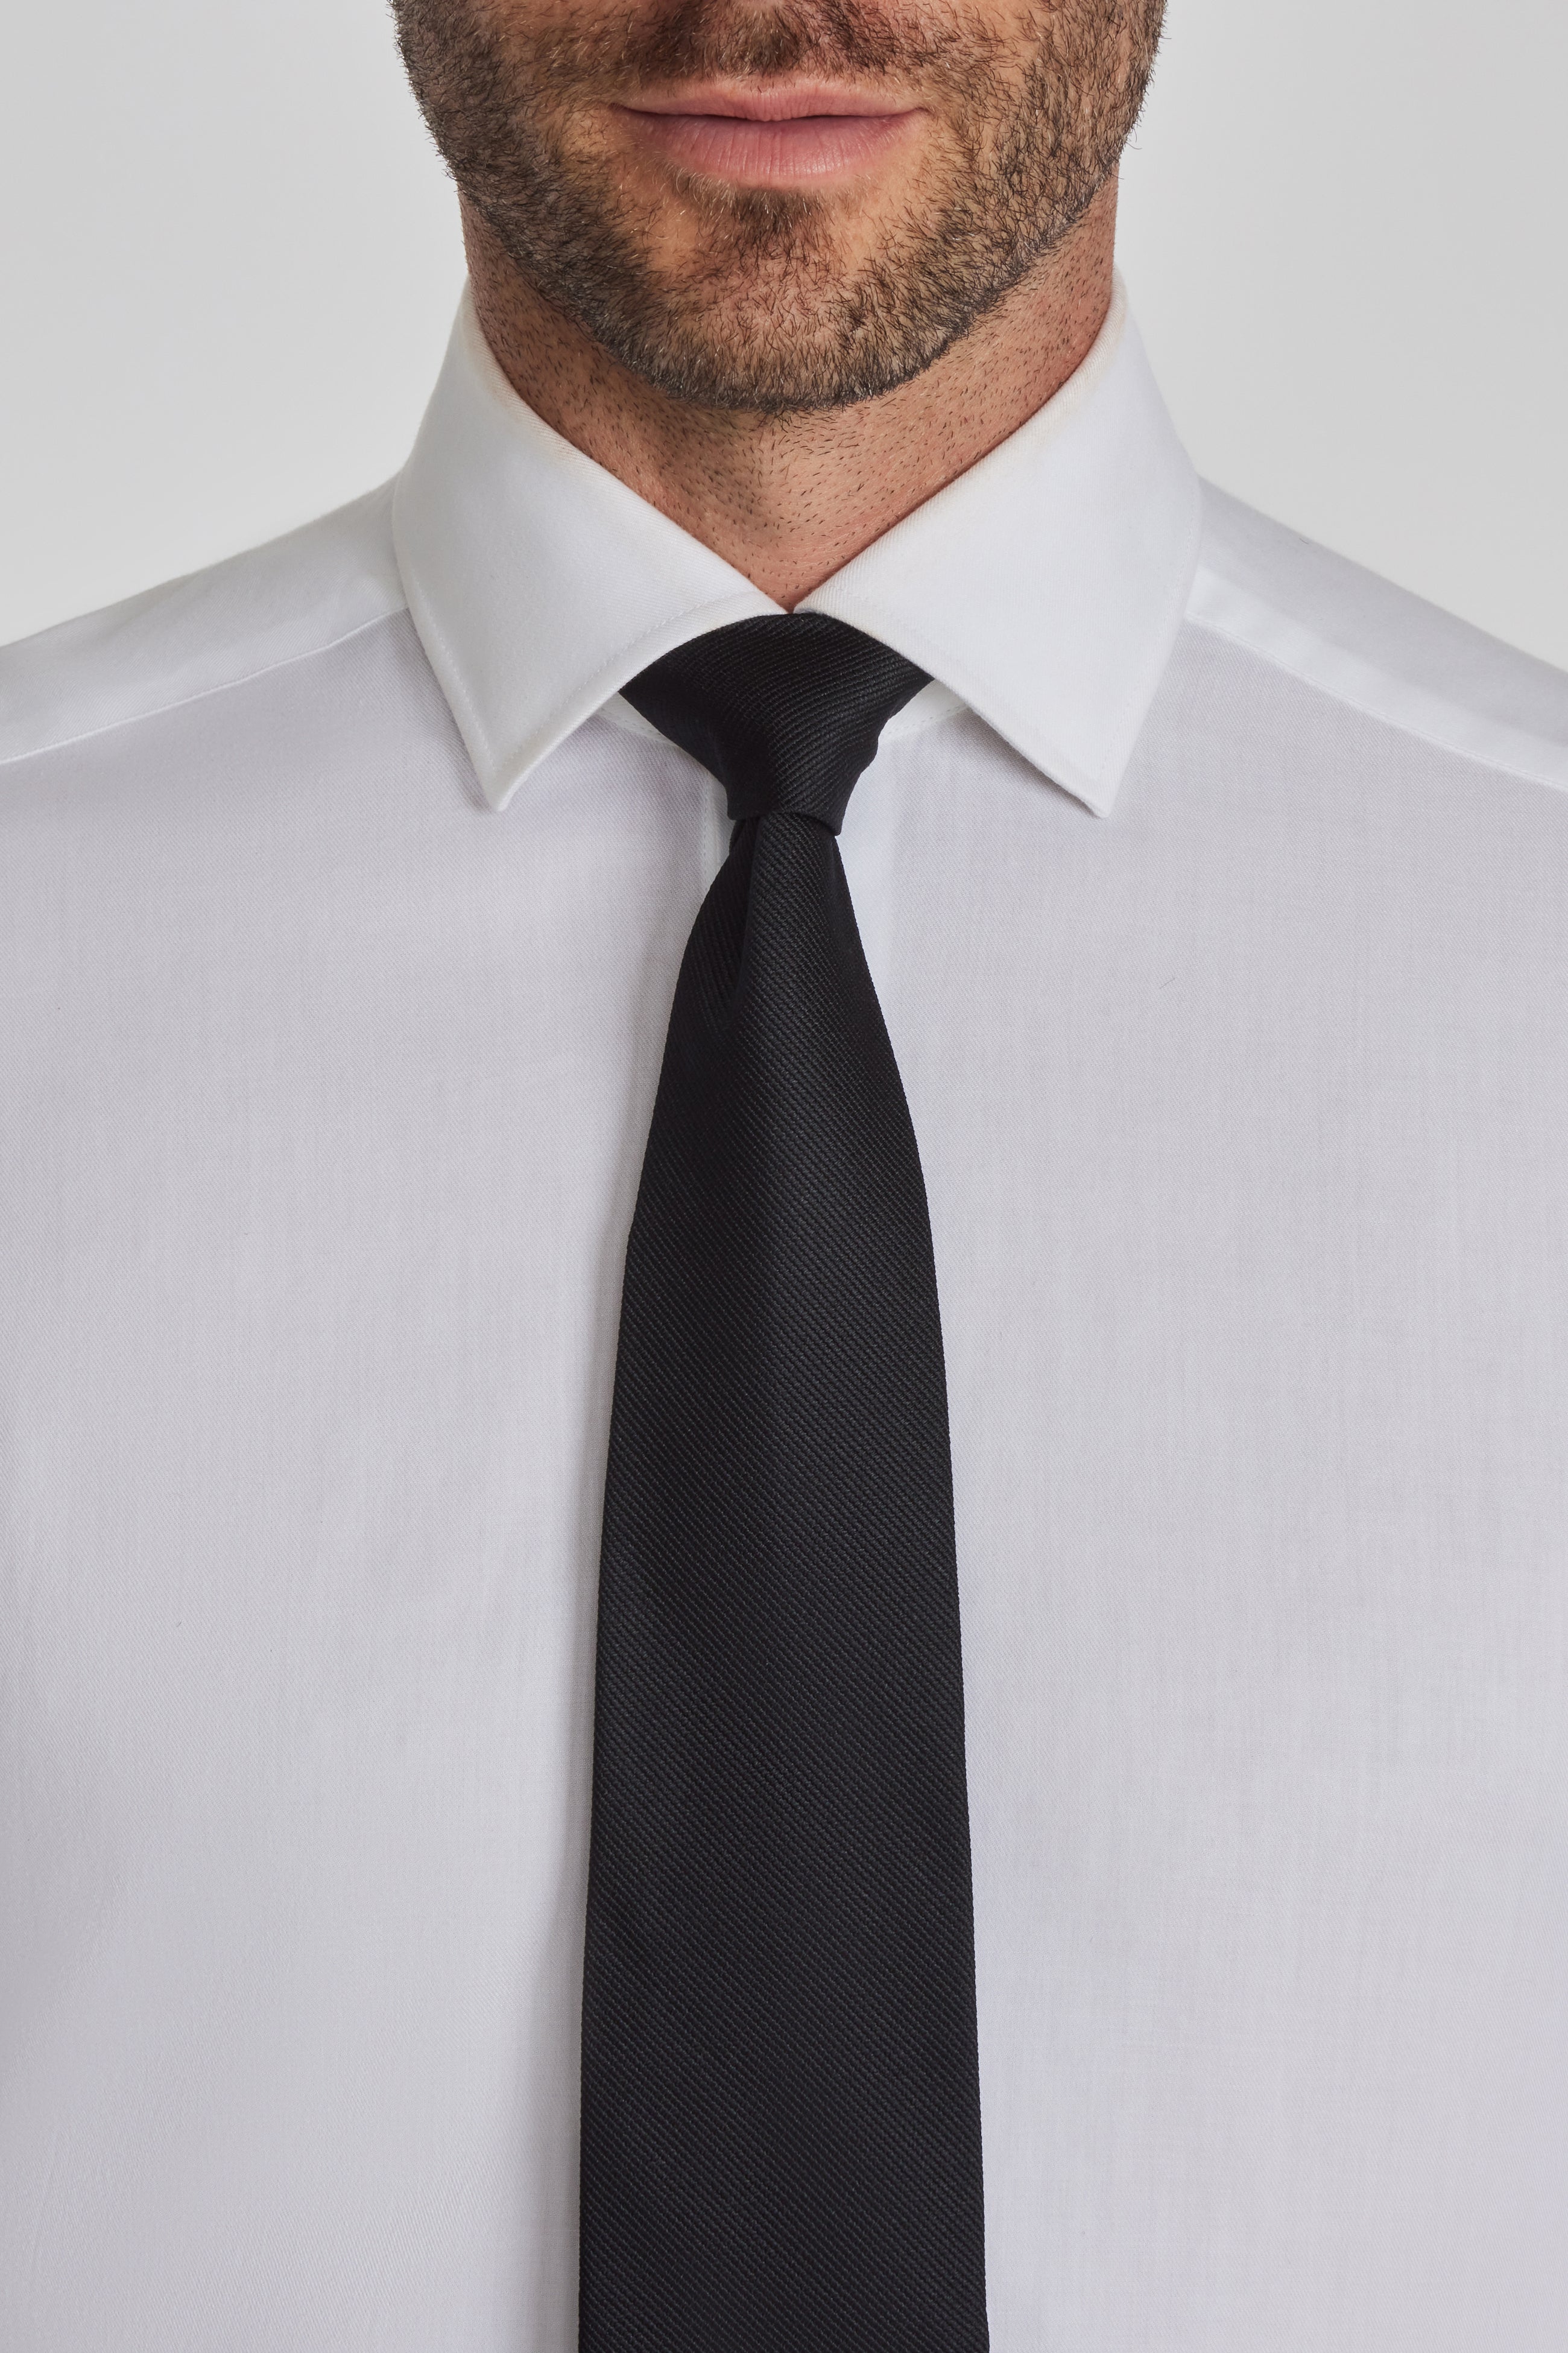 Vue alternative 1 Cravate Tissée Unie Noire Bowman